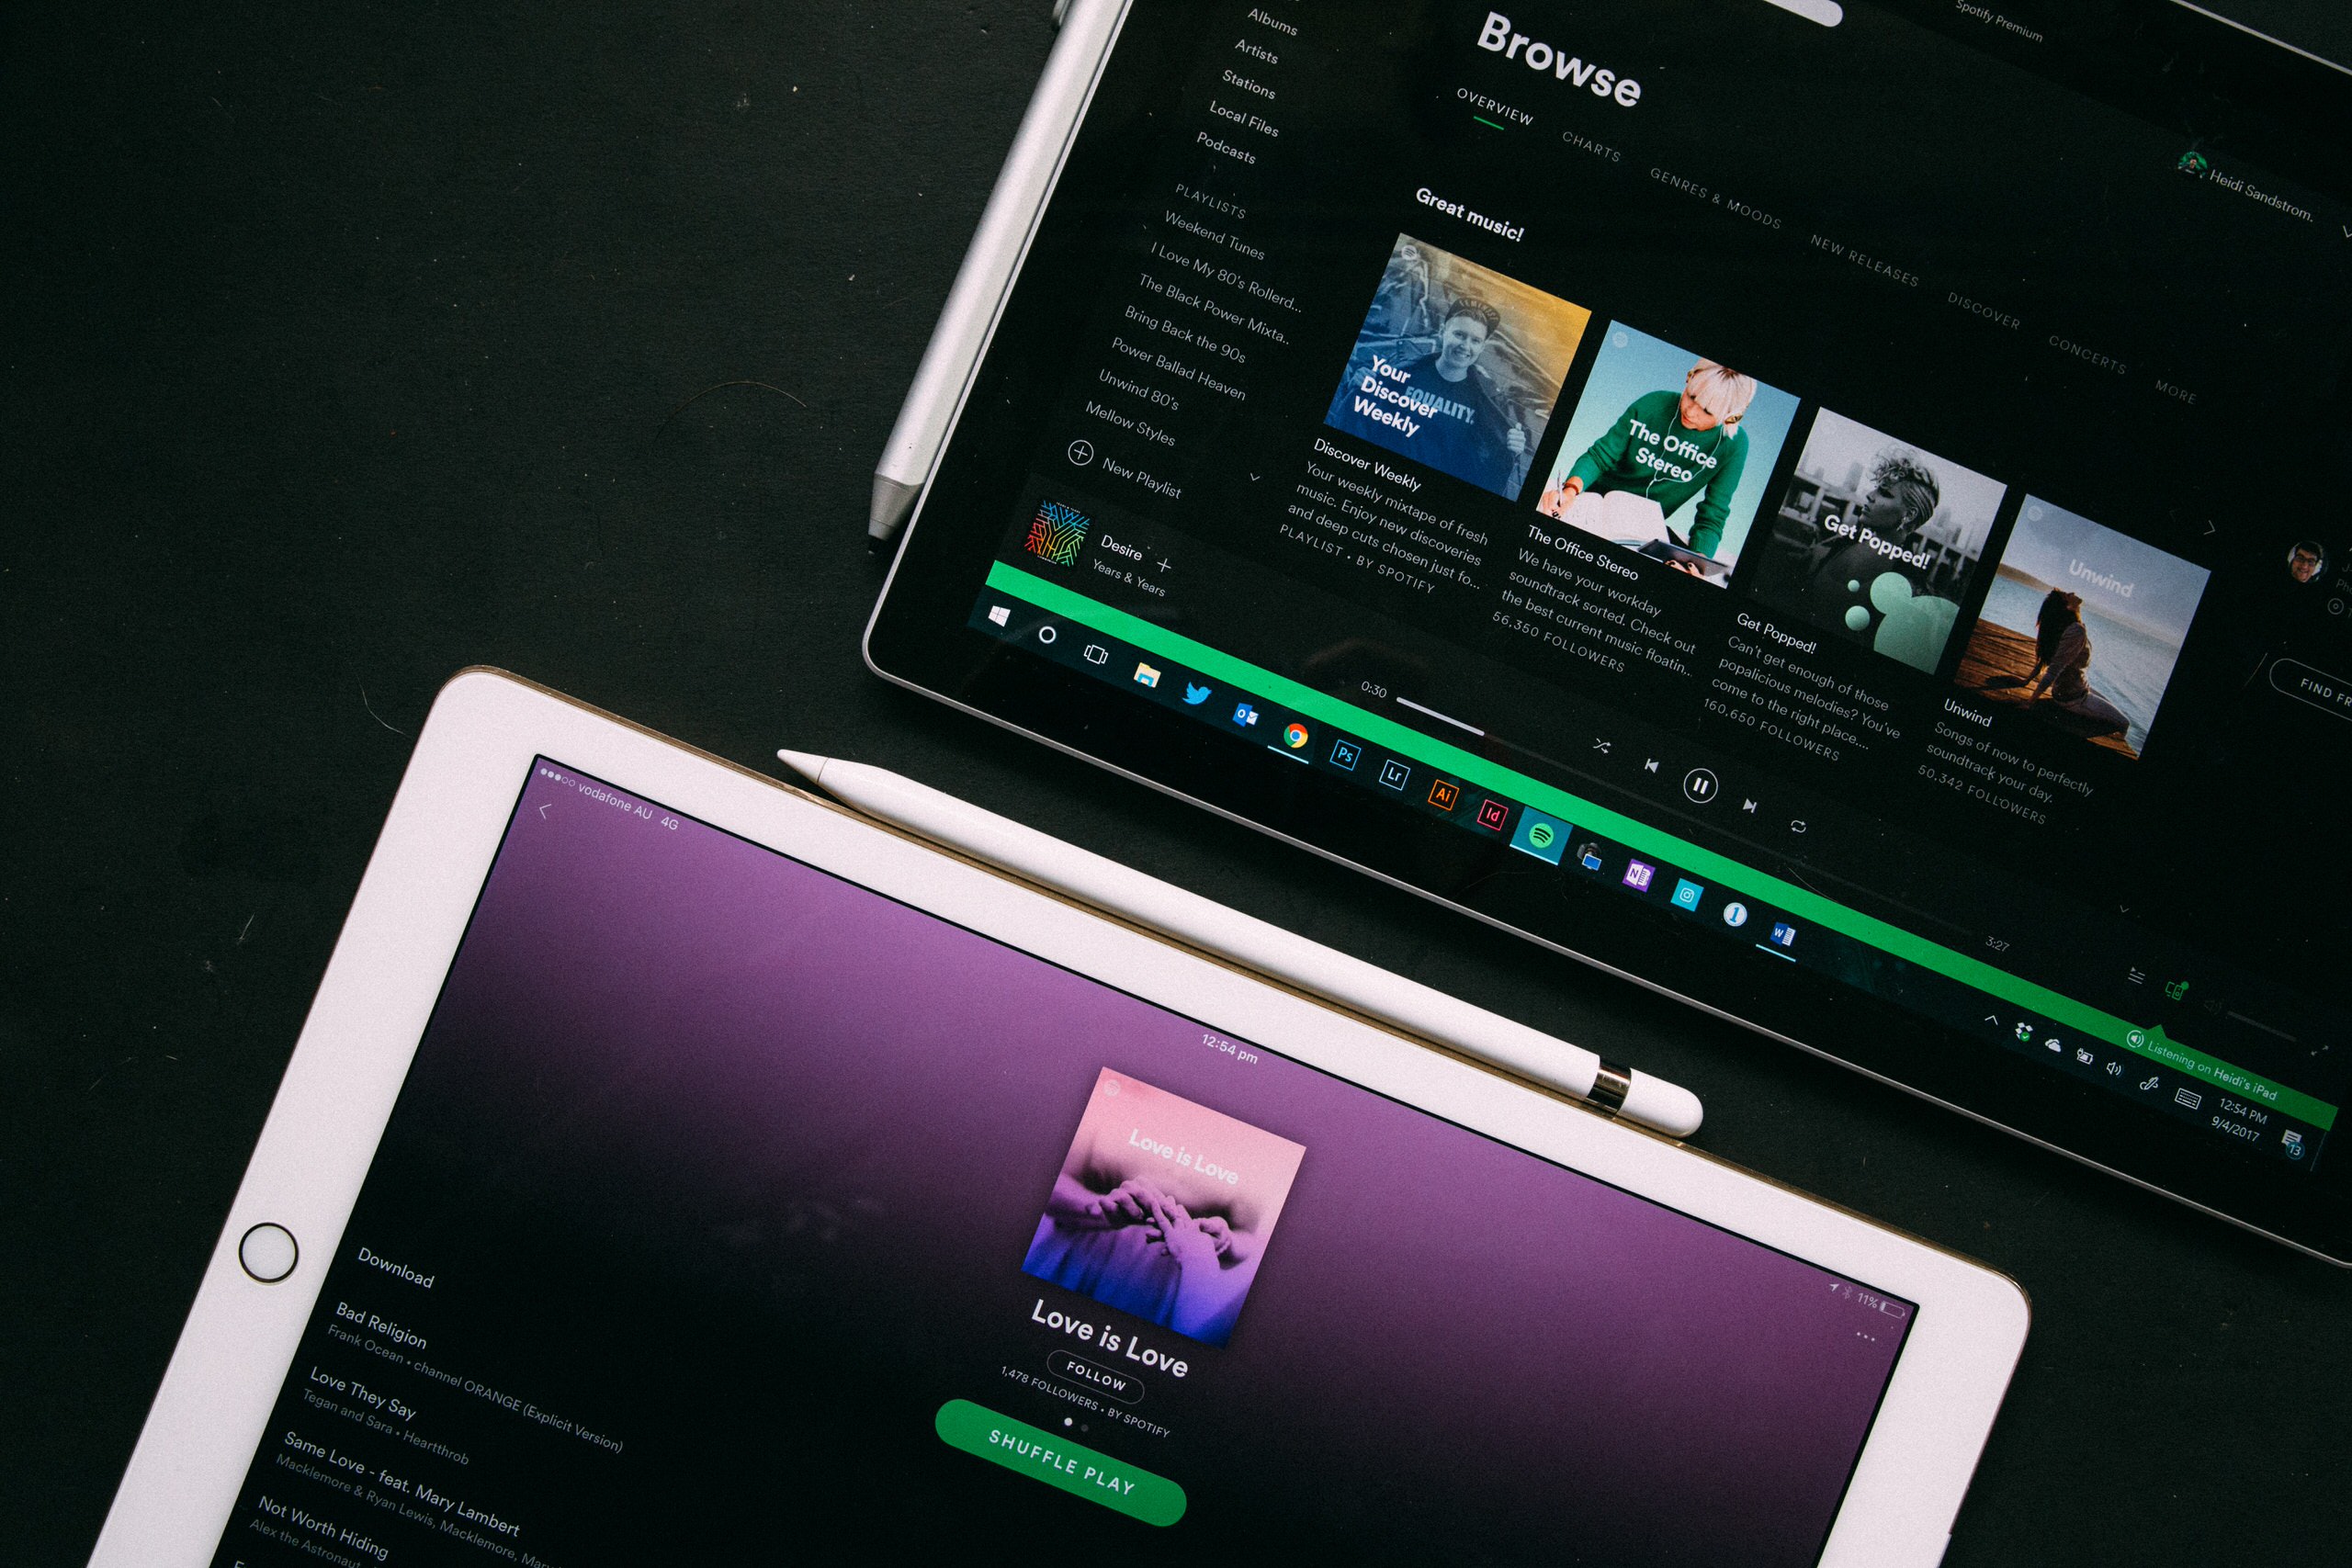 Dịch vụ nhạc Spotify cán mốc 130 triệu người dùng trả phí